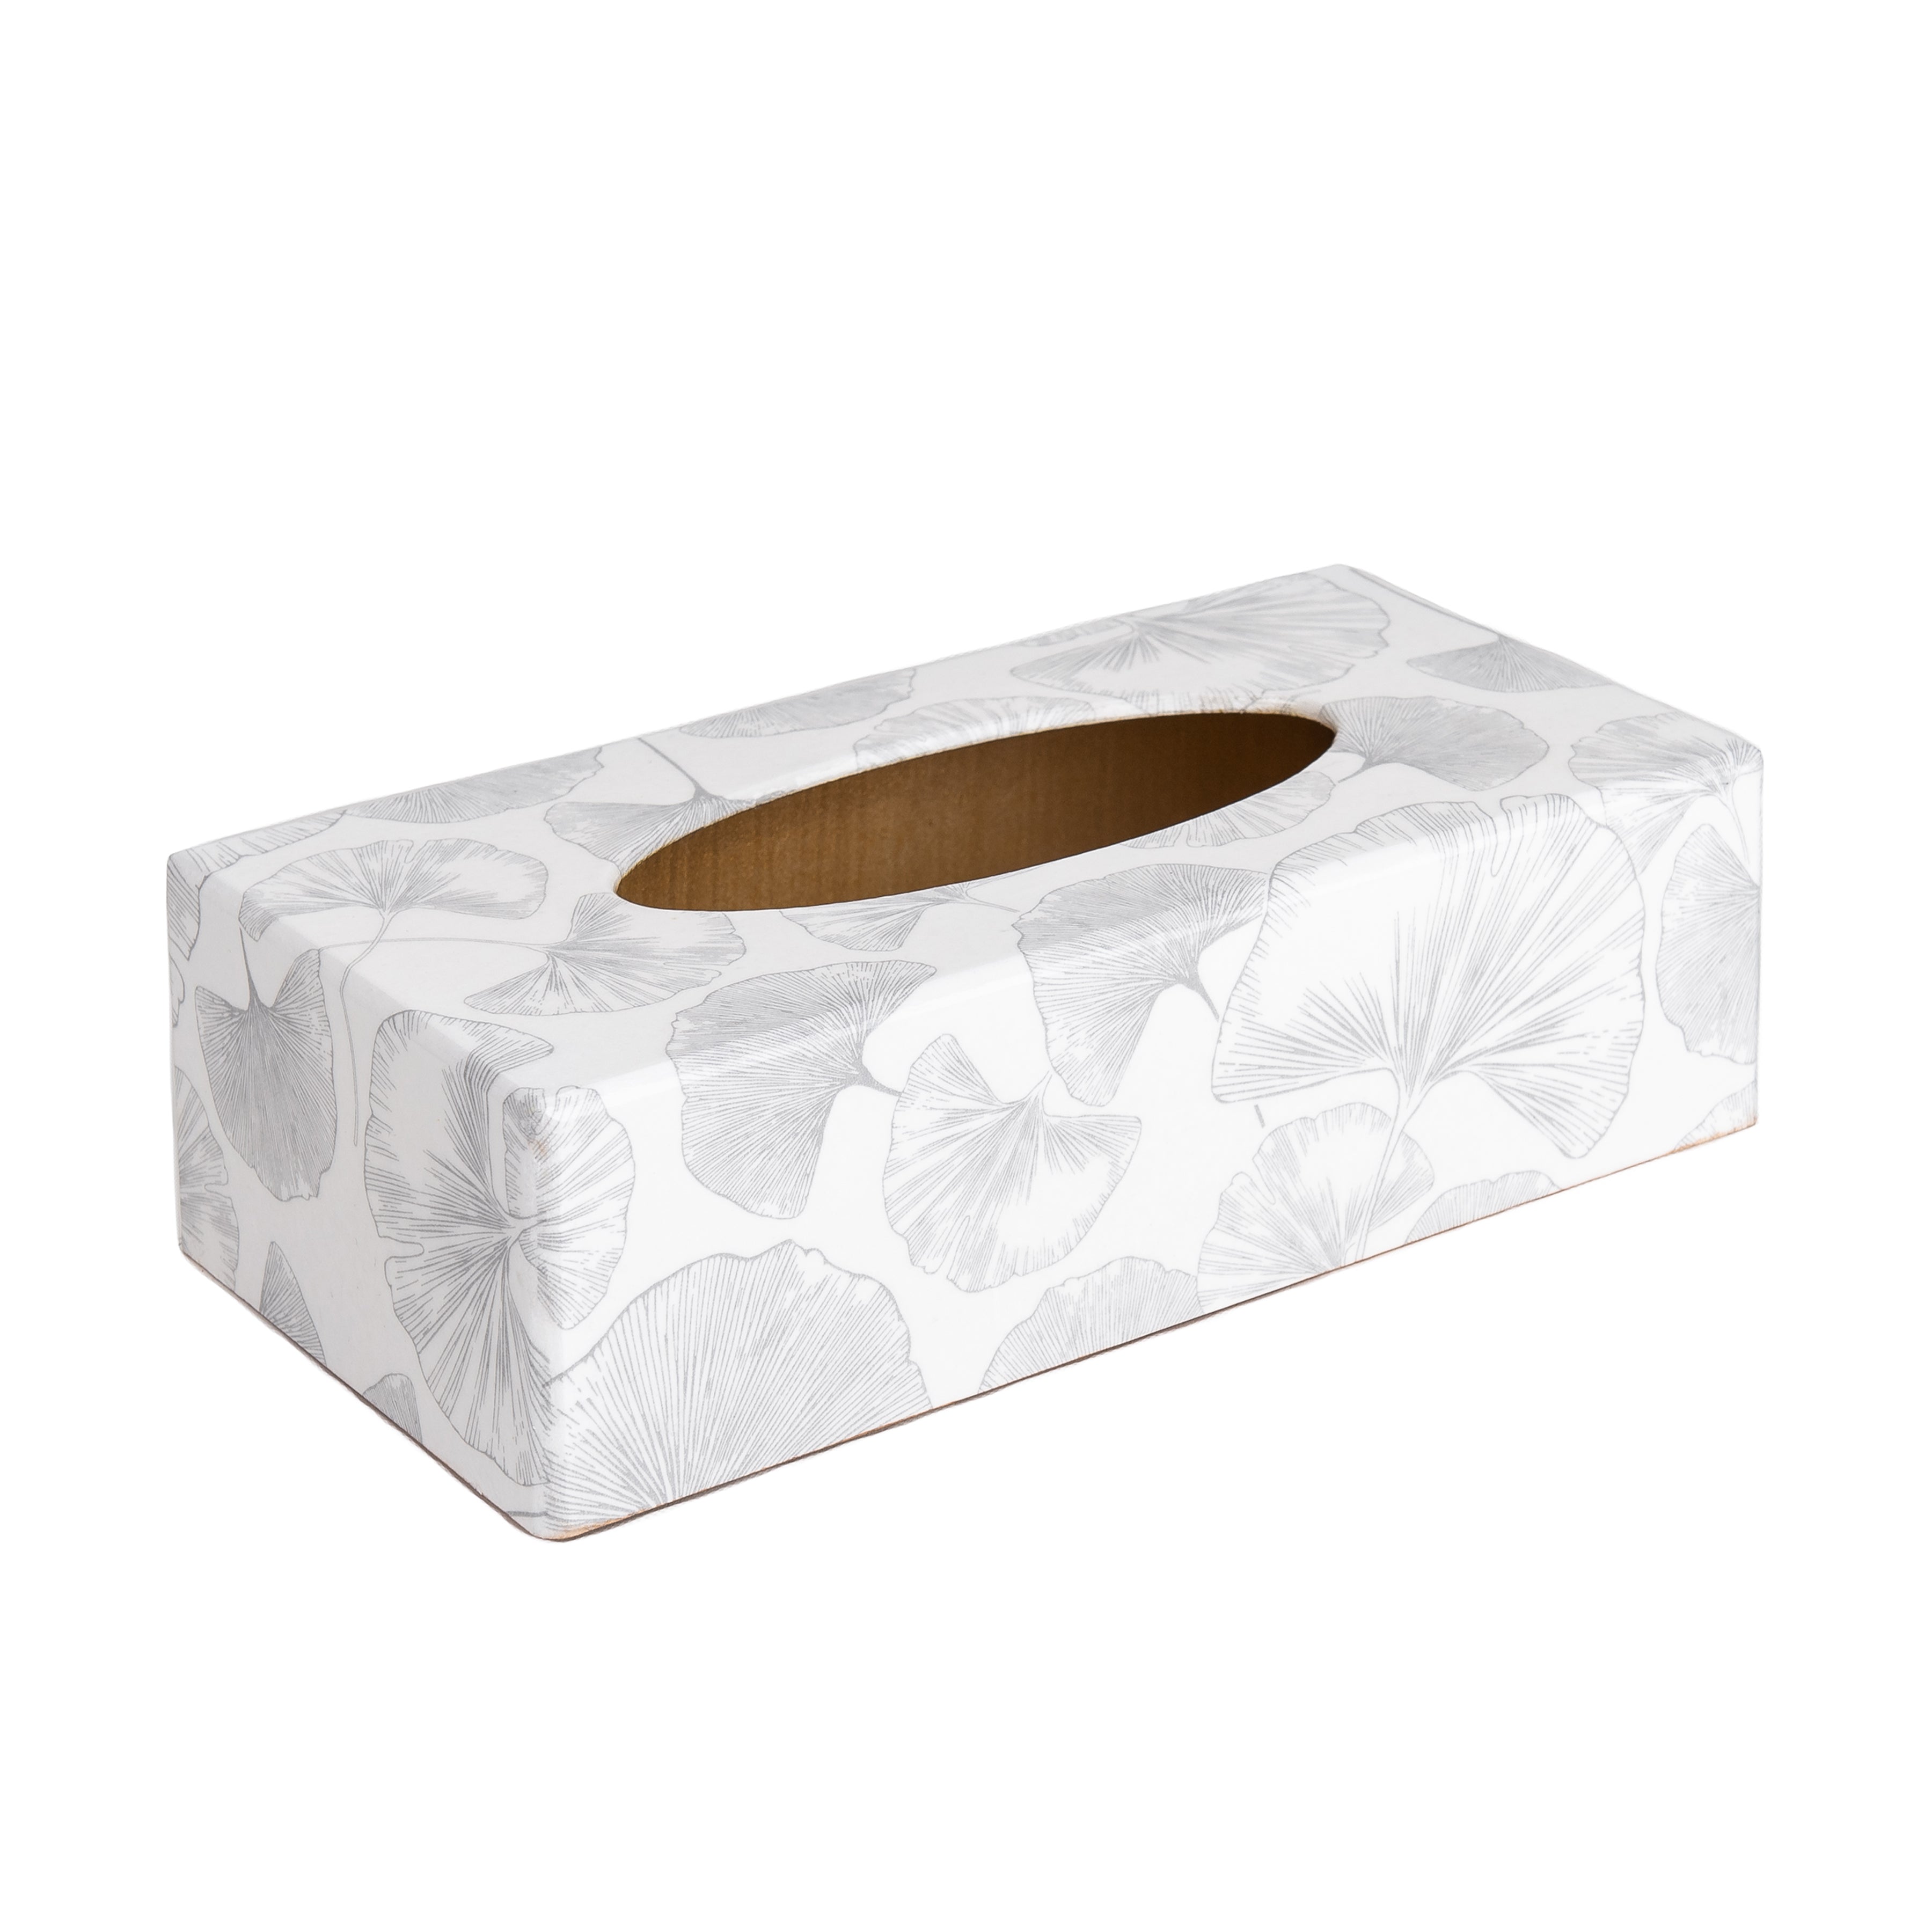 White Ginko rectangular tissue box cover